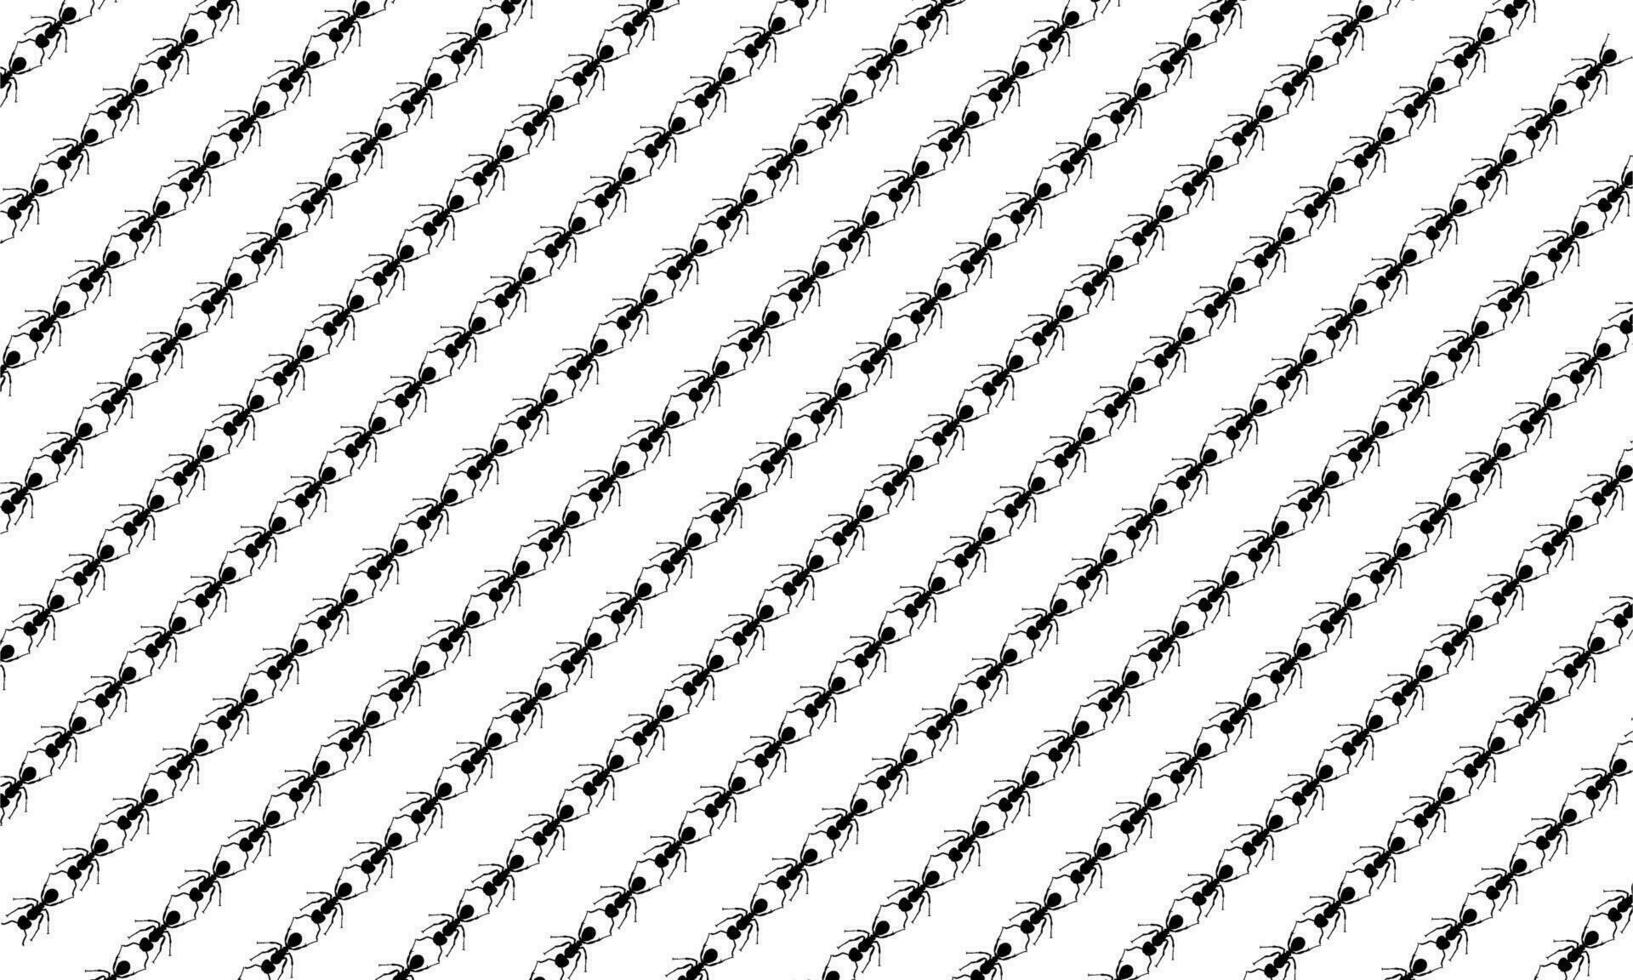 naadloos mier motieven patroon voor overladen, decoratie, of achtergrond, dier afdrukken serie kan gebruikt voor behang, tapijt patroon, textiel, kleding stof, papier, inpakken, plastic, enz. vector illustratie